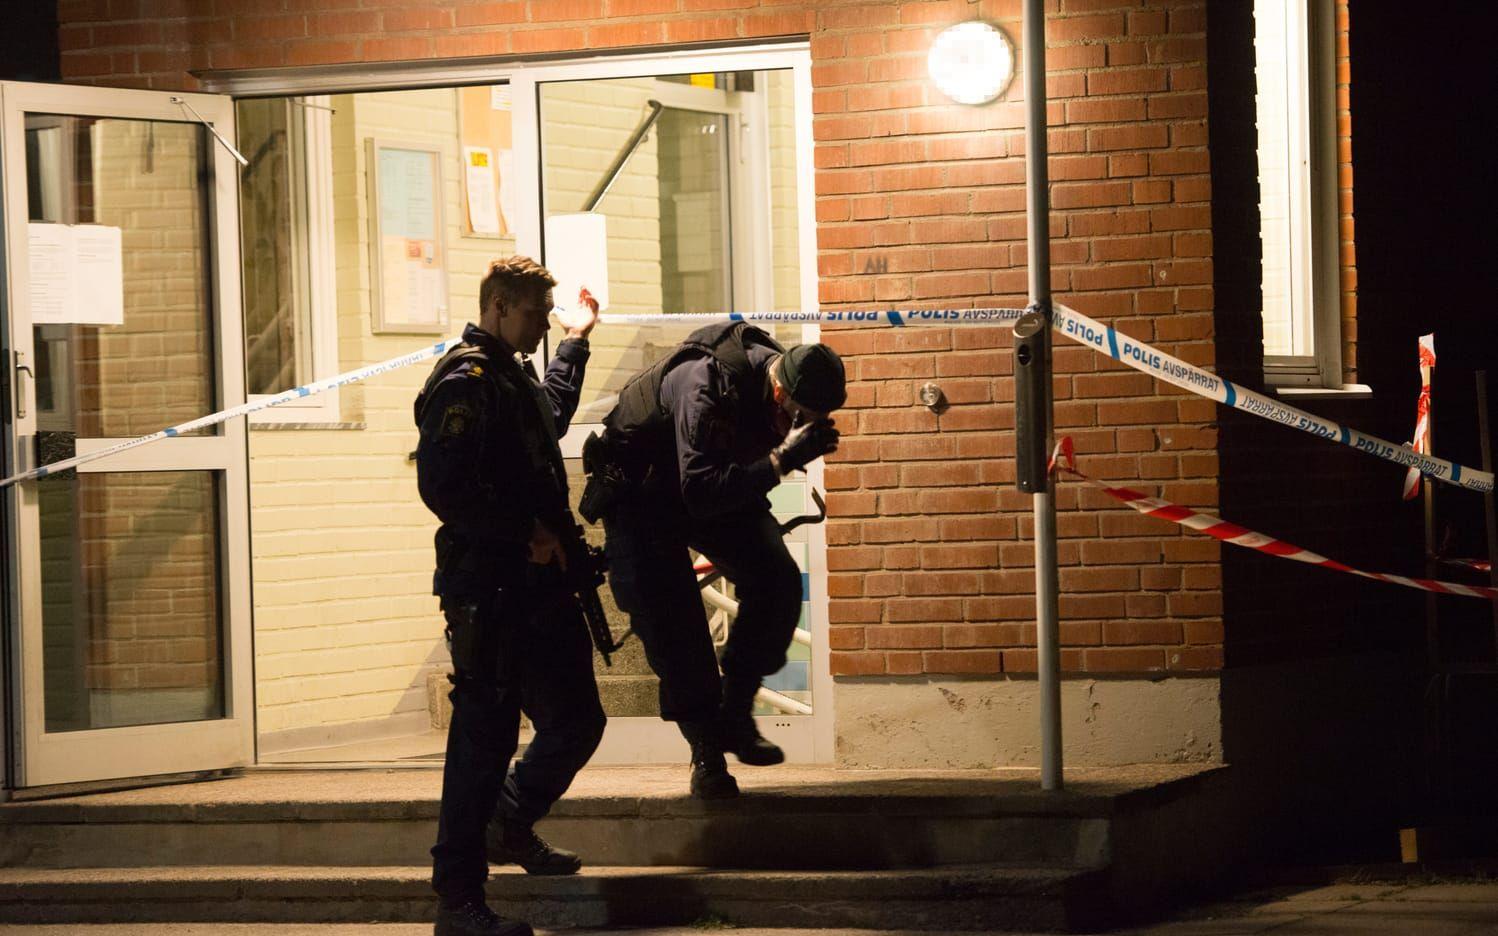 En man i Trollhättan larmade polisen efter att ha blivit skjuten i benet vid 21-tiden på torsdagskvällen. Bild: Johanna Joseph
